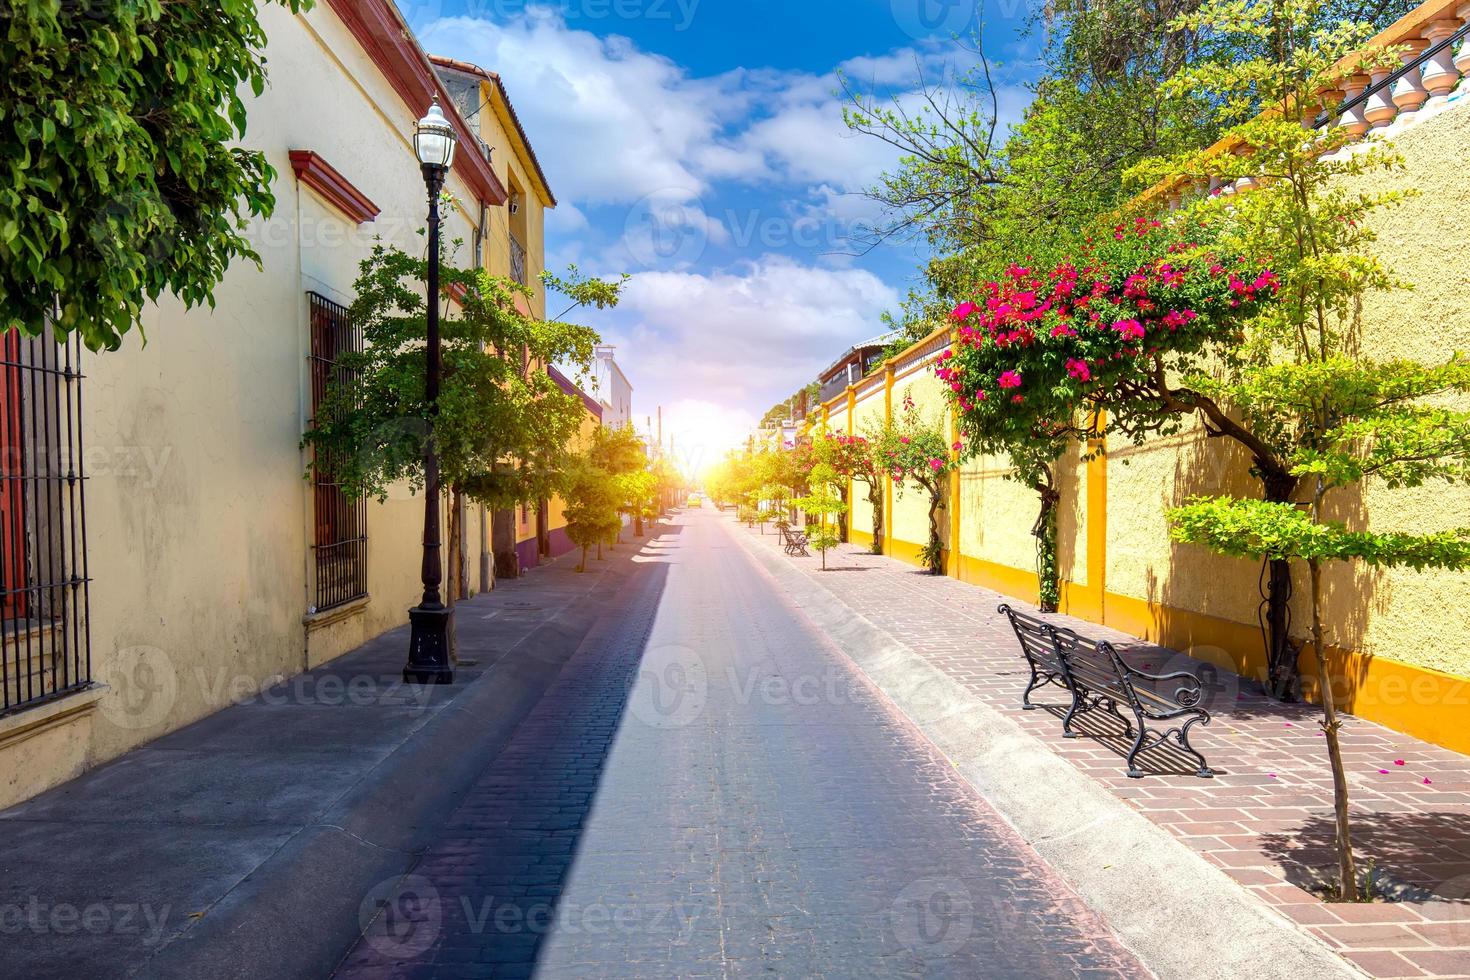 guadalajara, tlaquepaque pintorescas calles coloridas durante la temporada alta de turismo foto